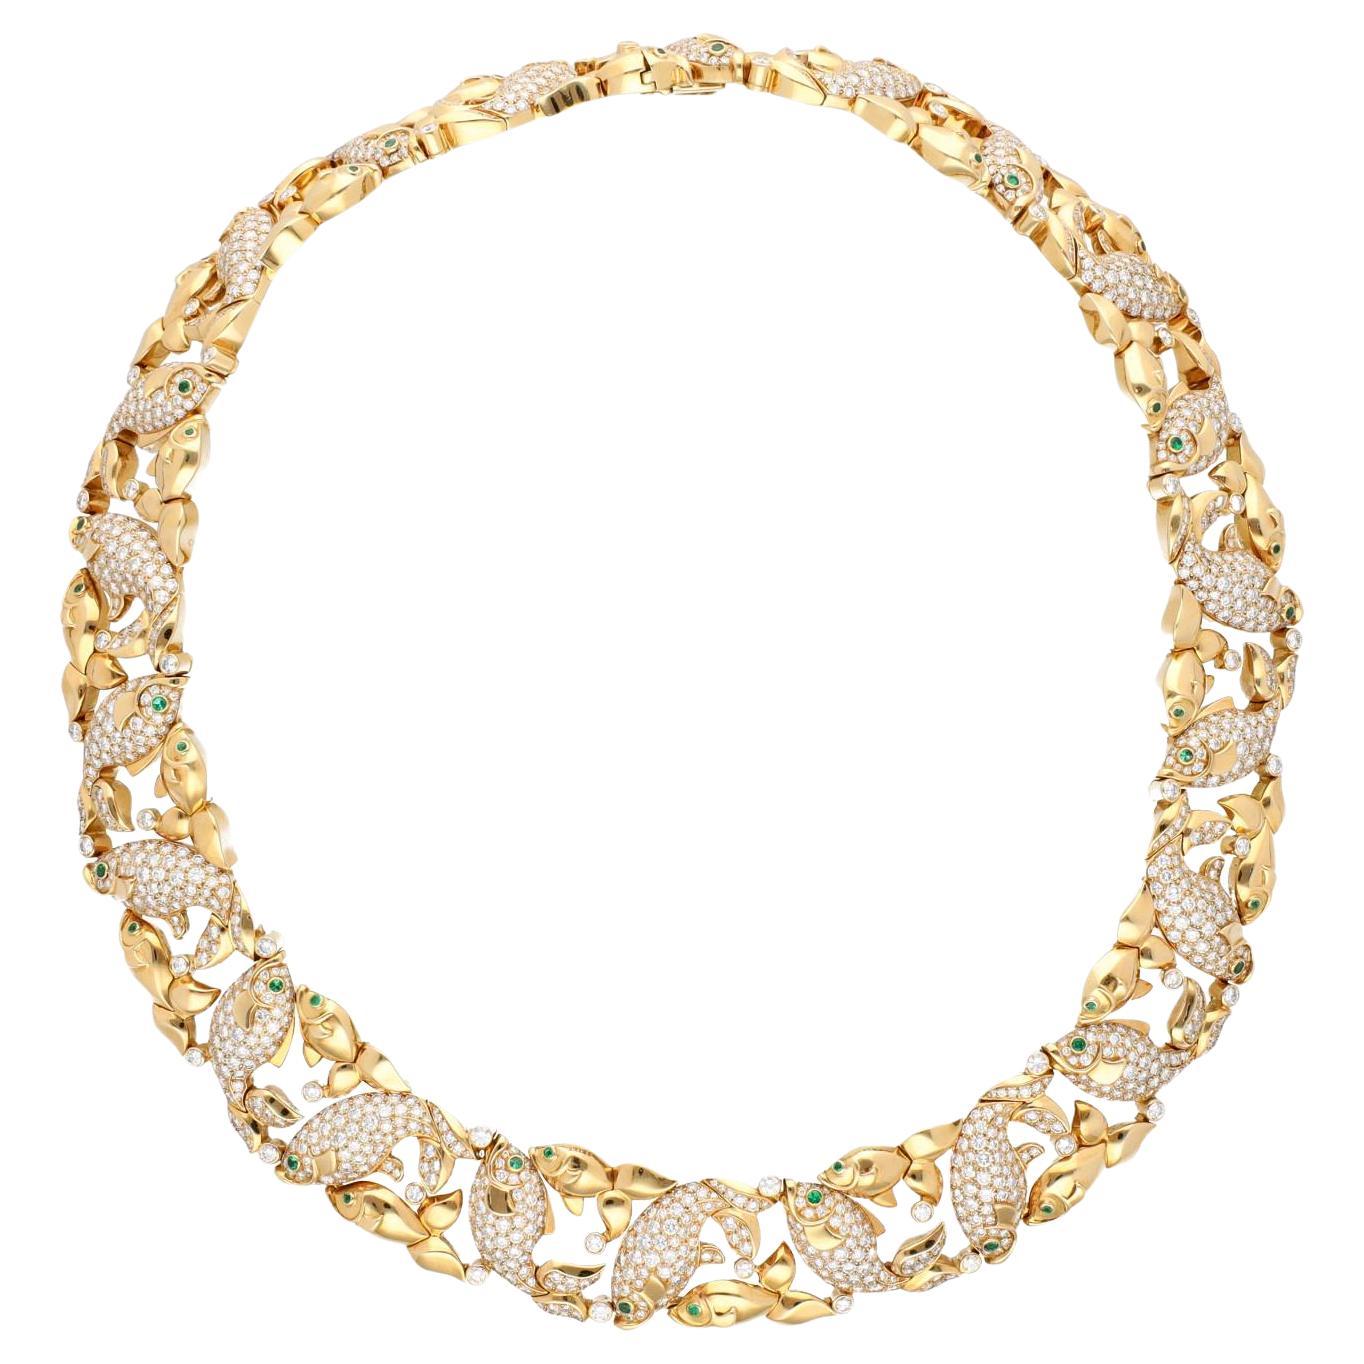 Cartier Good Luck Koi Fish Motif Diamond and Emerald  Necklace